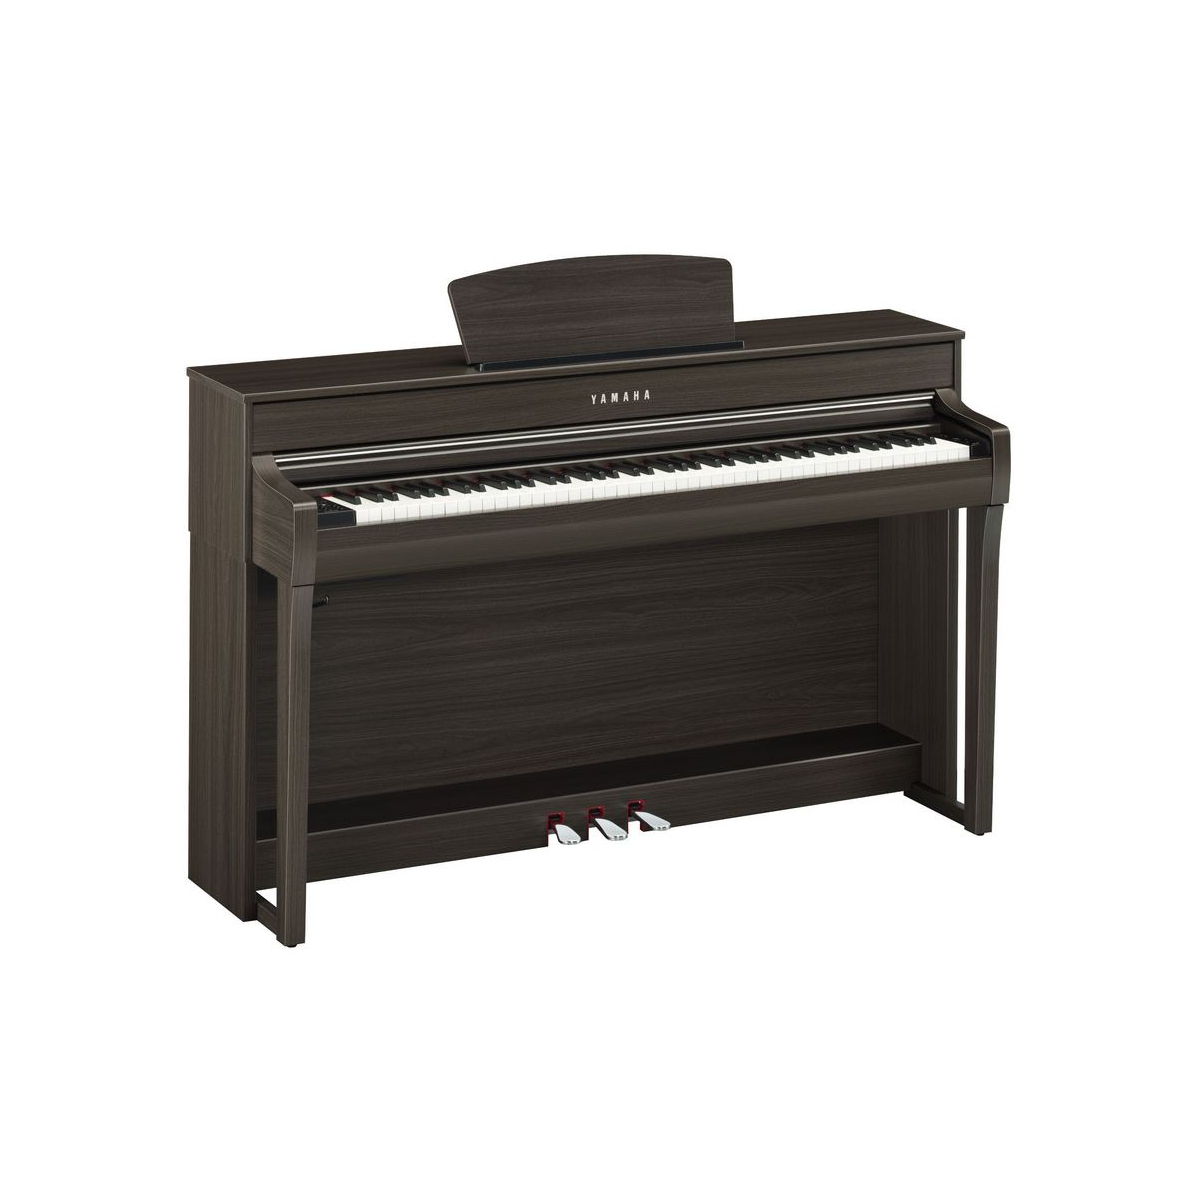 Pianos numériques meubles - Yamaha - CLP-735 (NOYER FONCÉ)